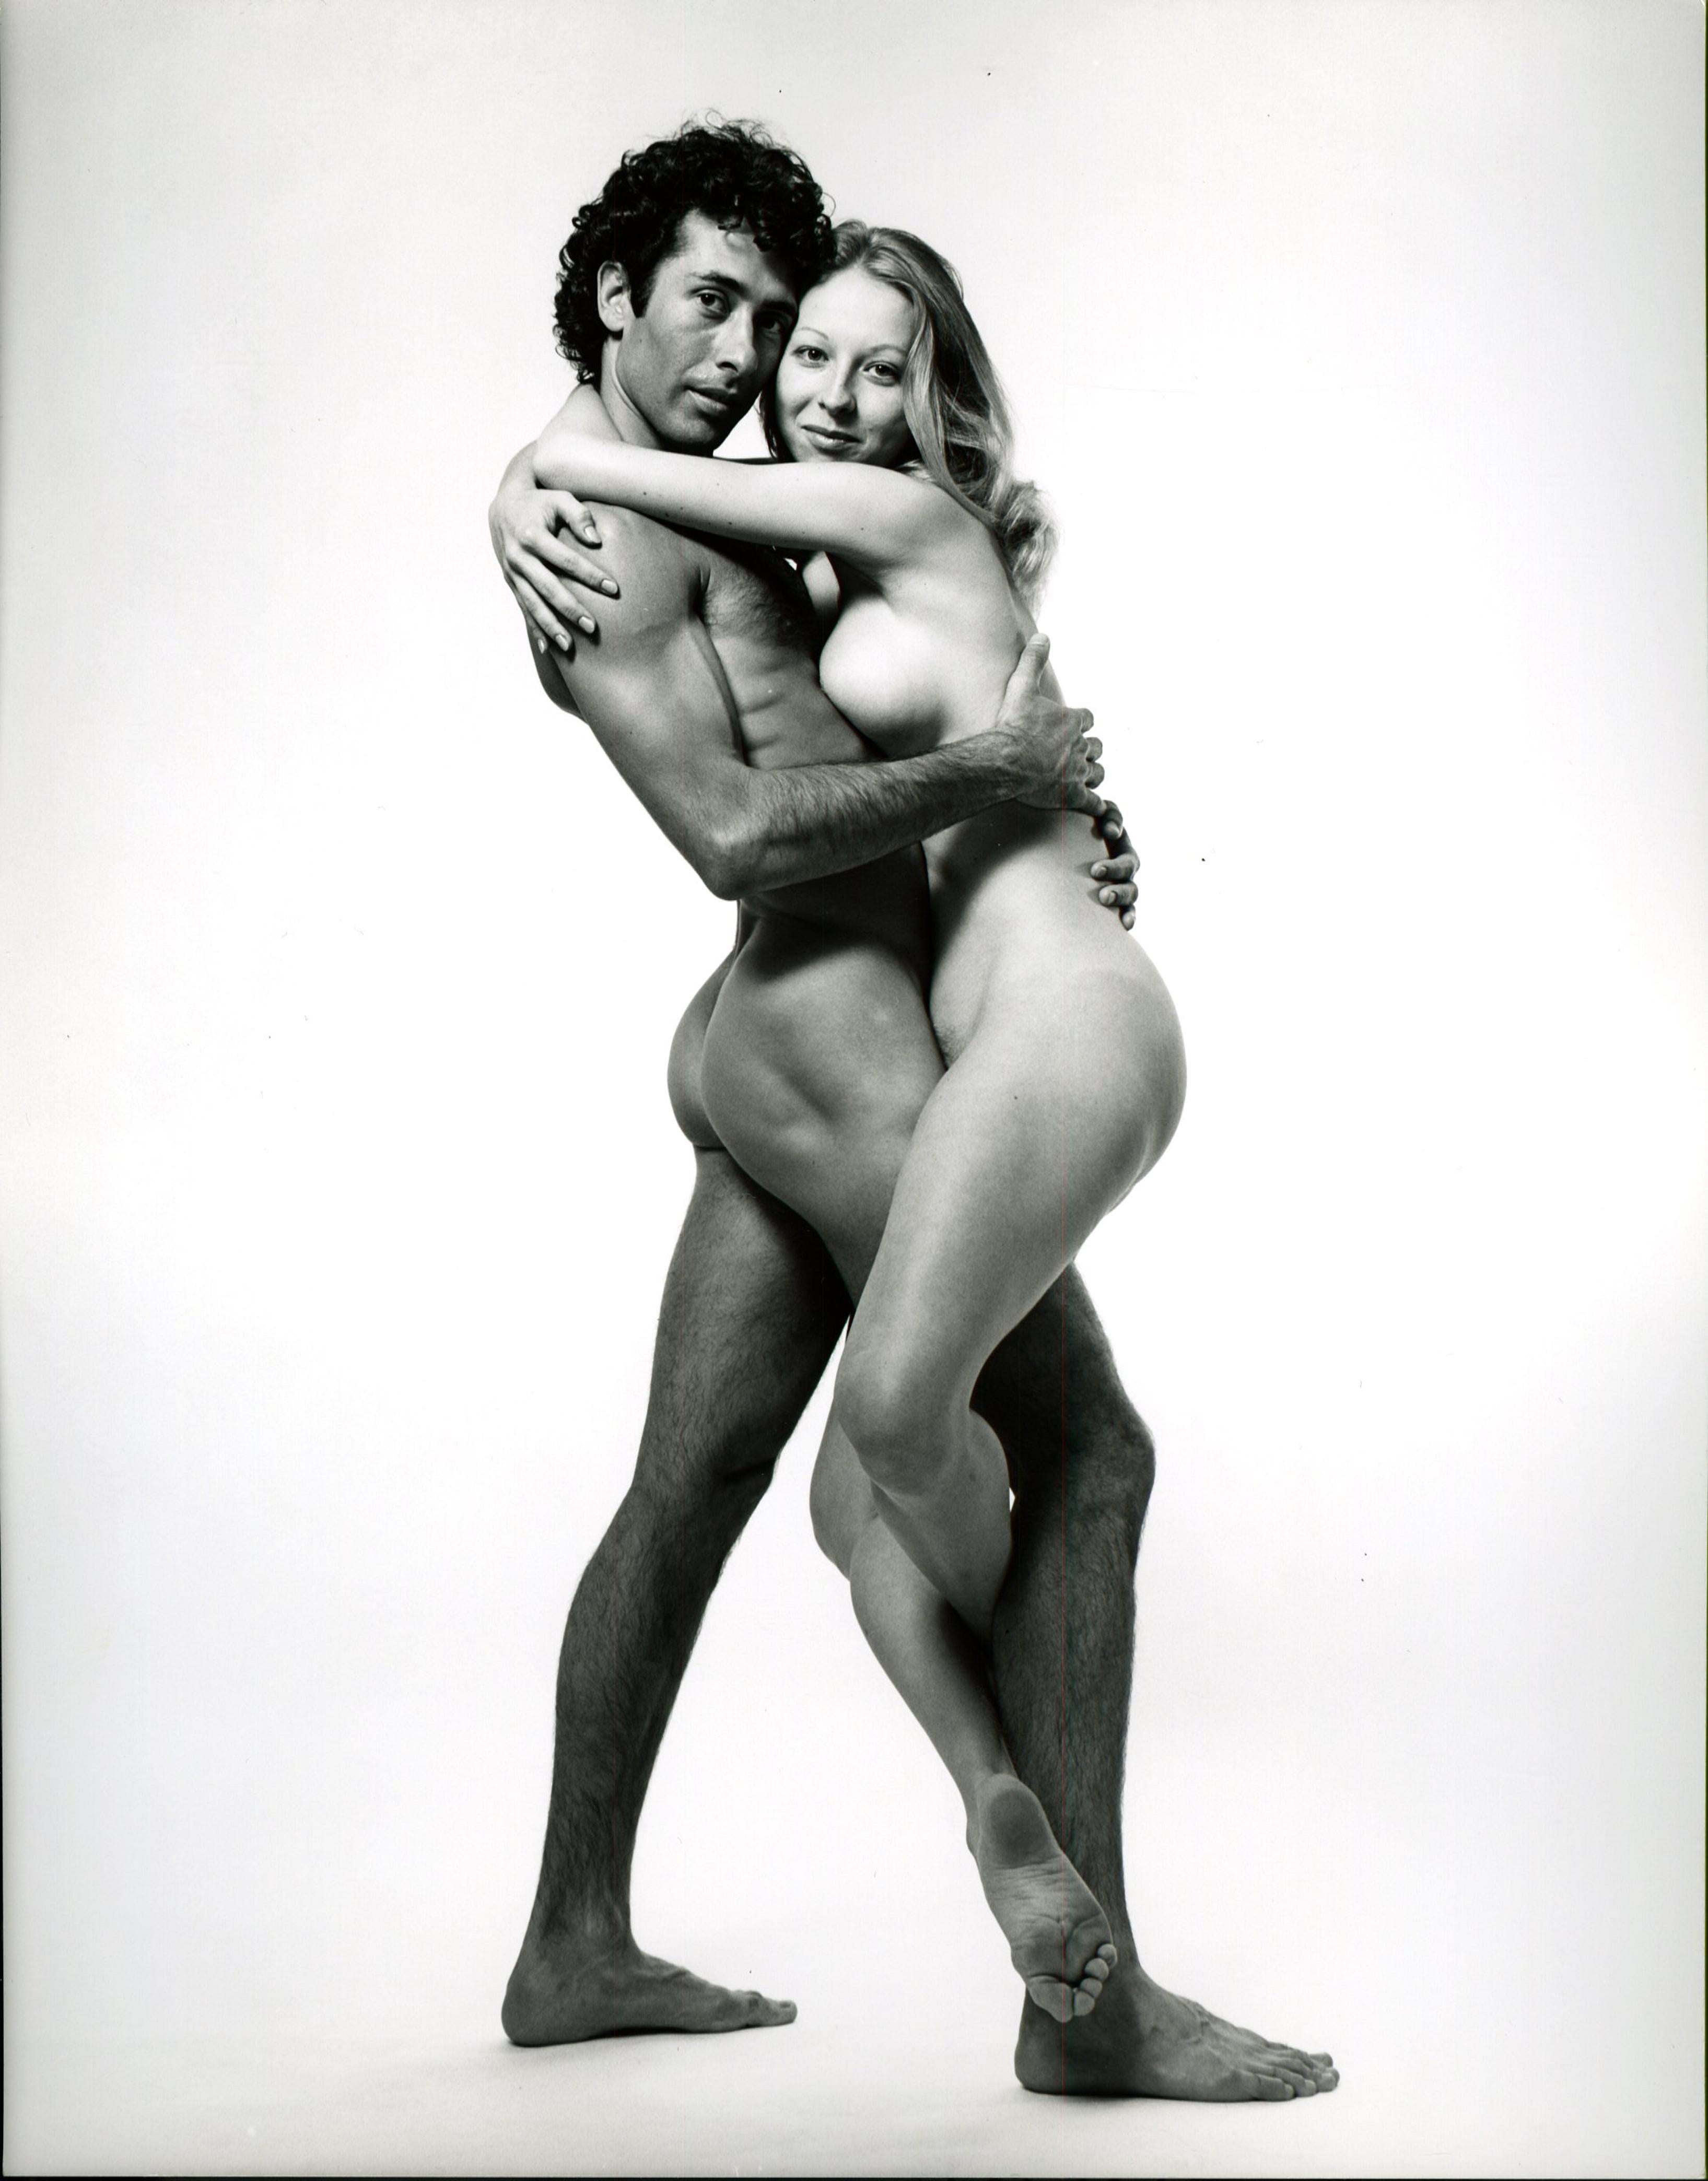 Jack Mitchell Nude Photograph – Marcus und Debbie Williamson fotografierten Akt für das Magazin „After Dark“